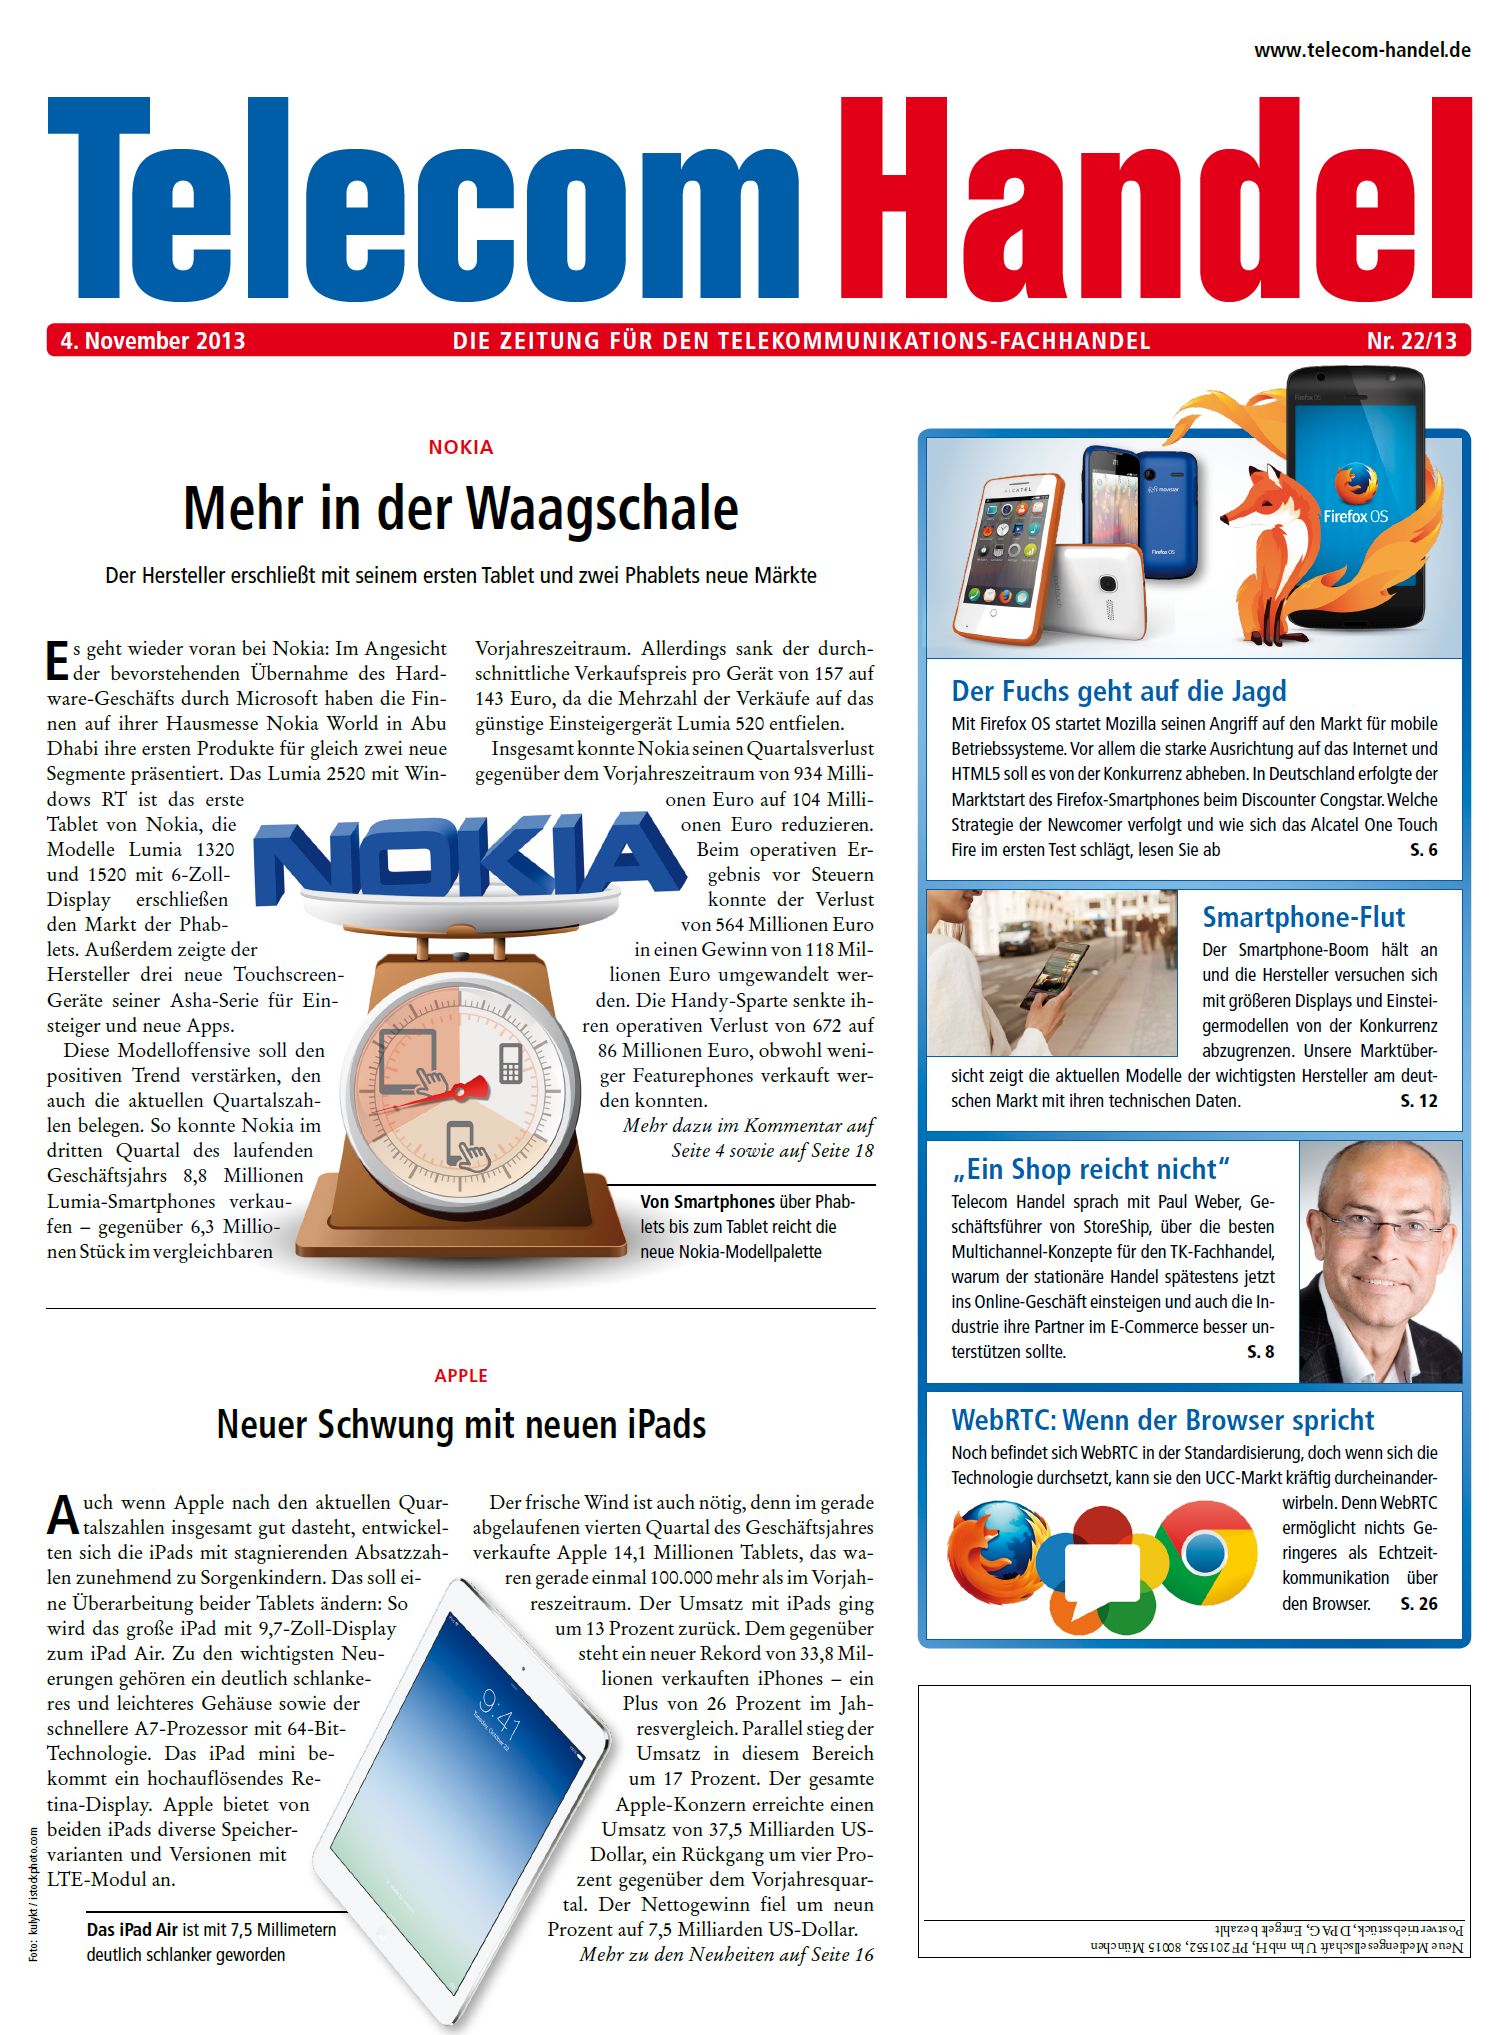 Telecom Handel Ausgabe 22/2013